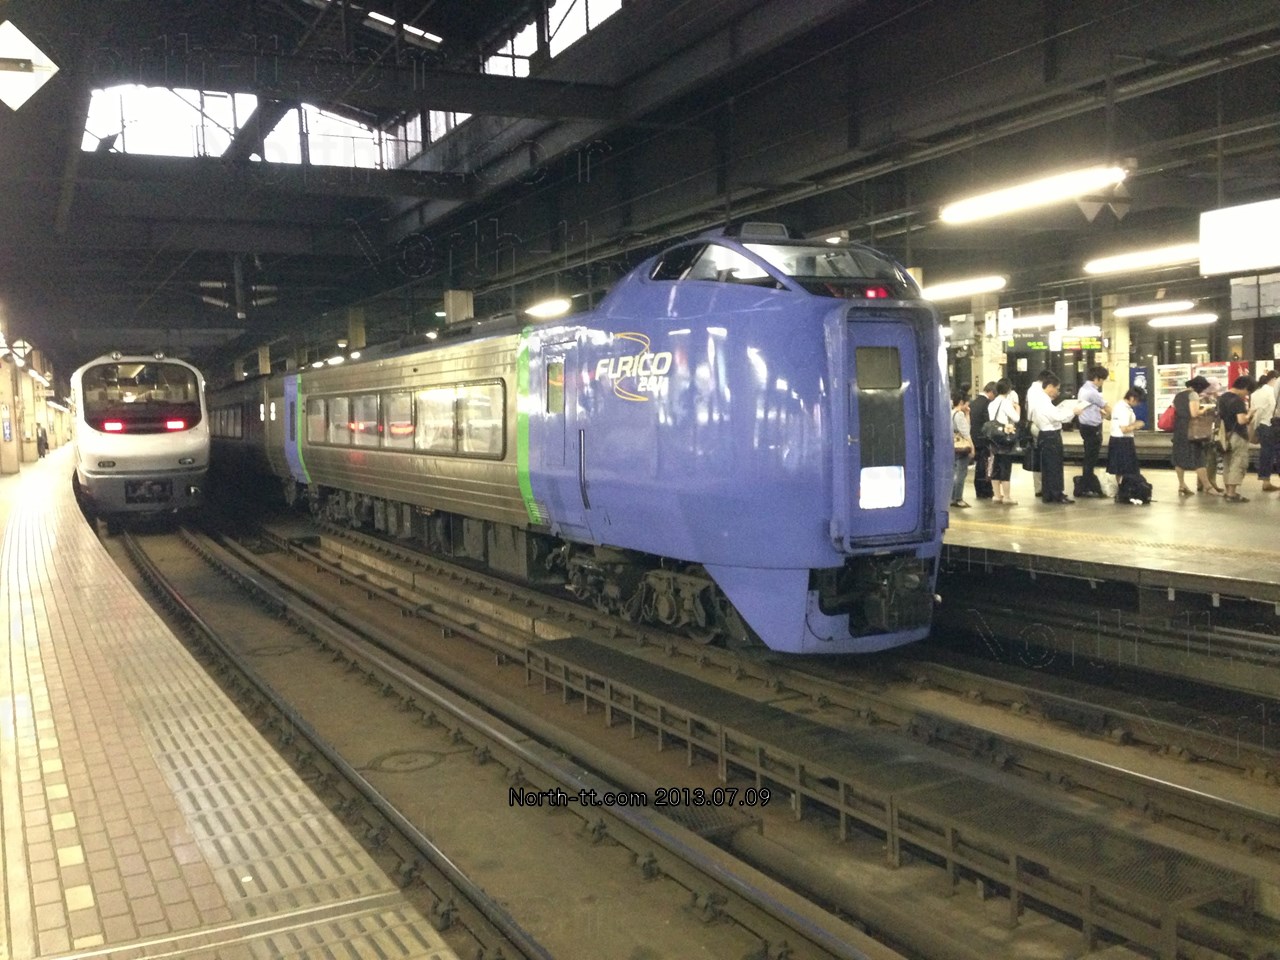  2013年7月のキハ281。臨時列車として運用されるノースレインボーと並ぶ 